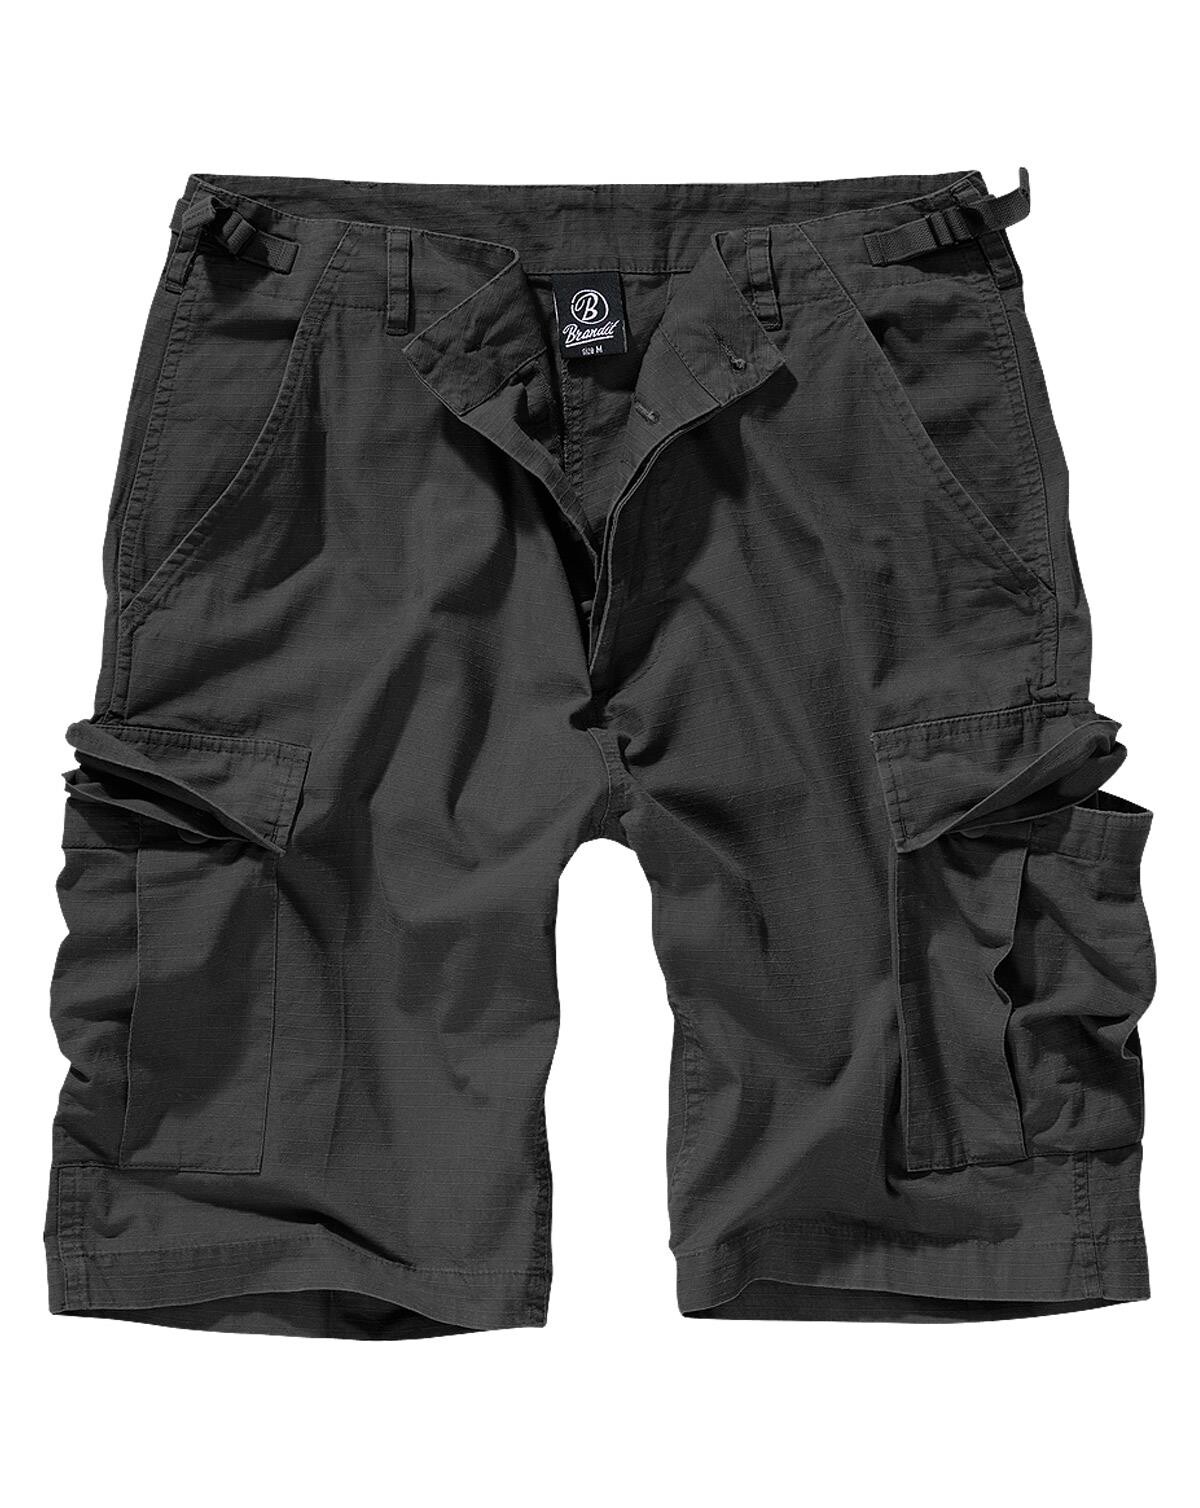 Brandit BDU Ripstop Shorts (Sort, S)